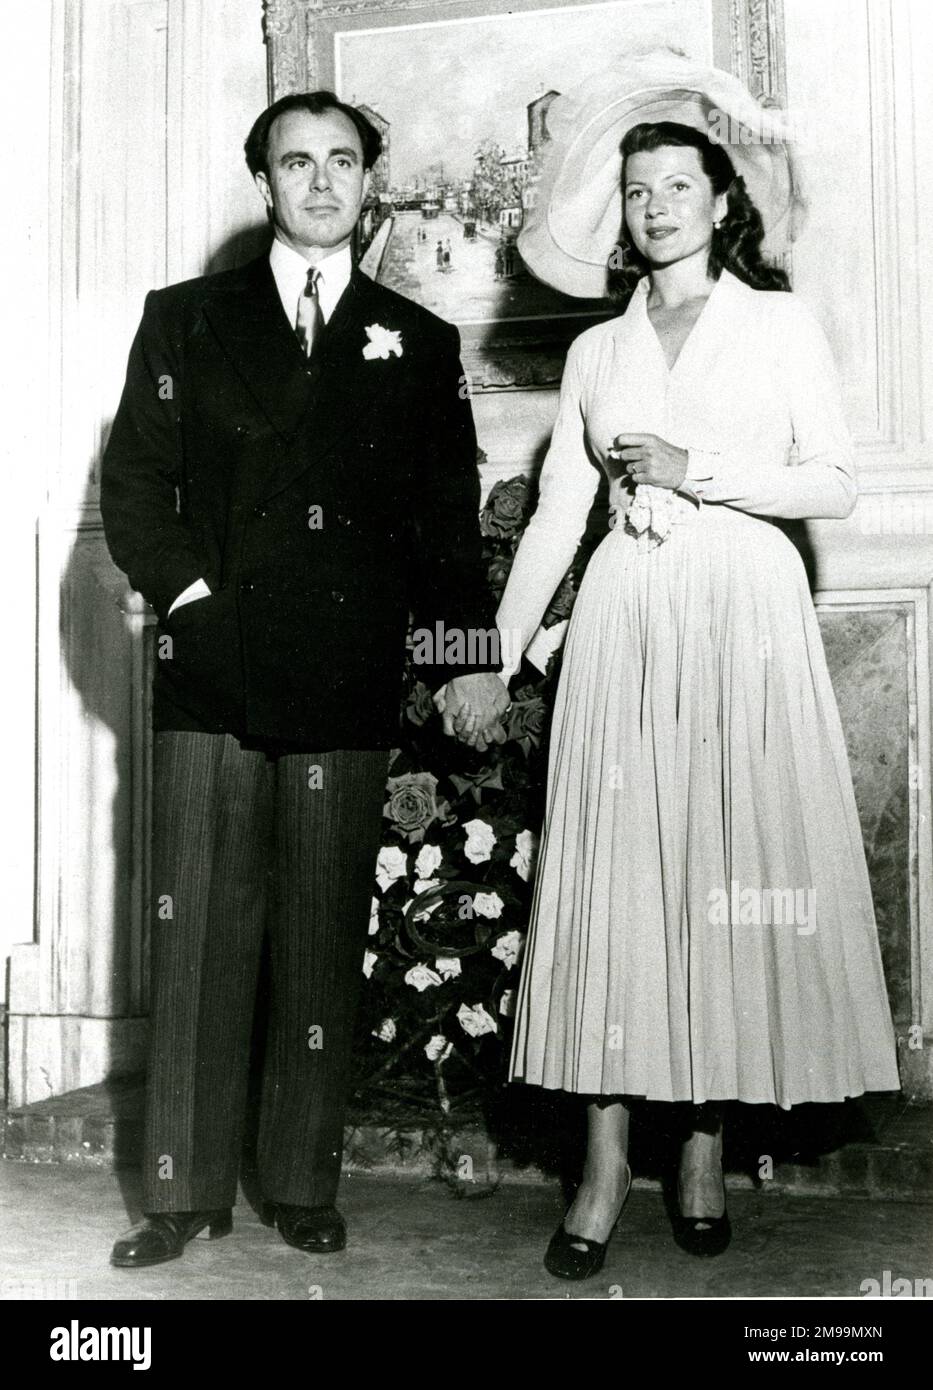 Le Prince Aly Khan (Prince Ali Salman Aga Khan) et Rita Hayworth, actrice et danseuse américaine, après leur mariage en mai 1949. Banque D'Images